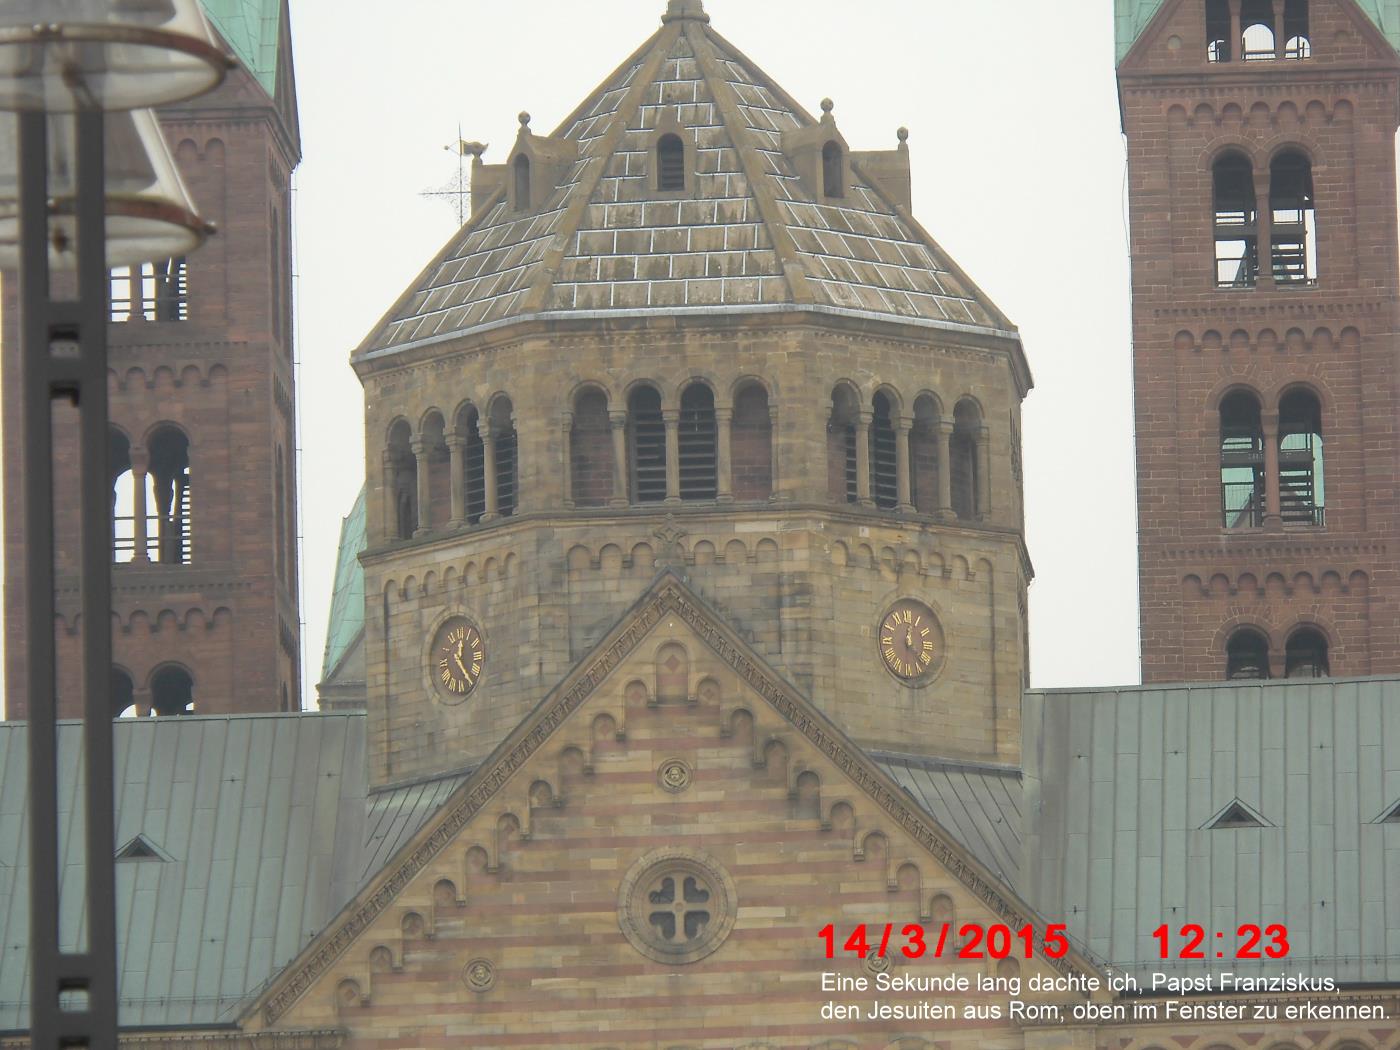 Speyer: Größter Zeuge Jehovas – ever seen – gibt auf – 14.03.2015